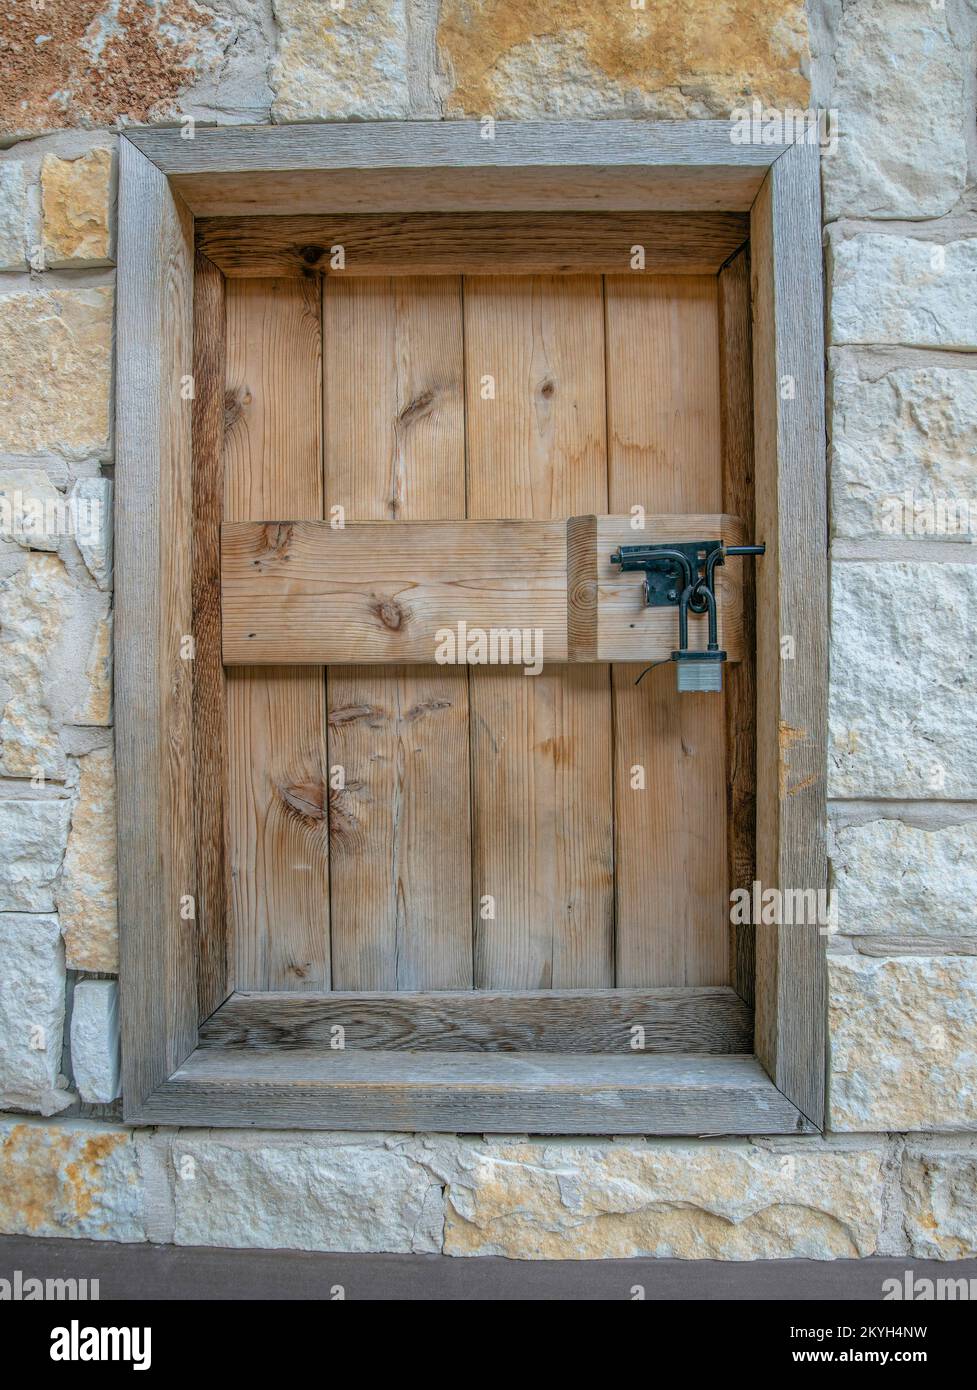 San Antonio, Texas – Holzvorhänge mit Vorhängeschloss. Kleine Fensternahaufnahme mit Holzabdeckung und Rahmen in der Mitte rauer Steinwände. Stockfoto